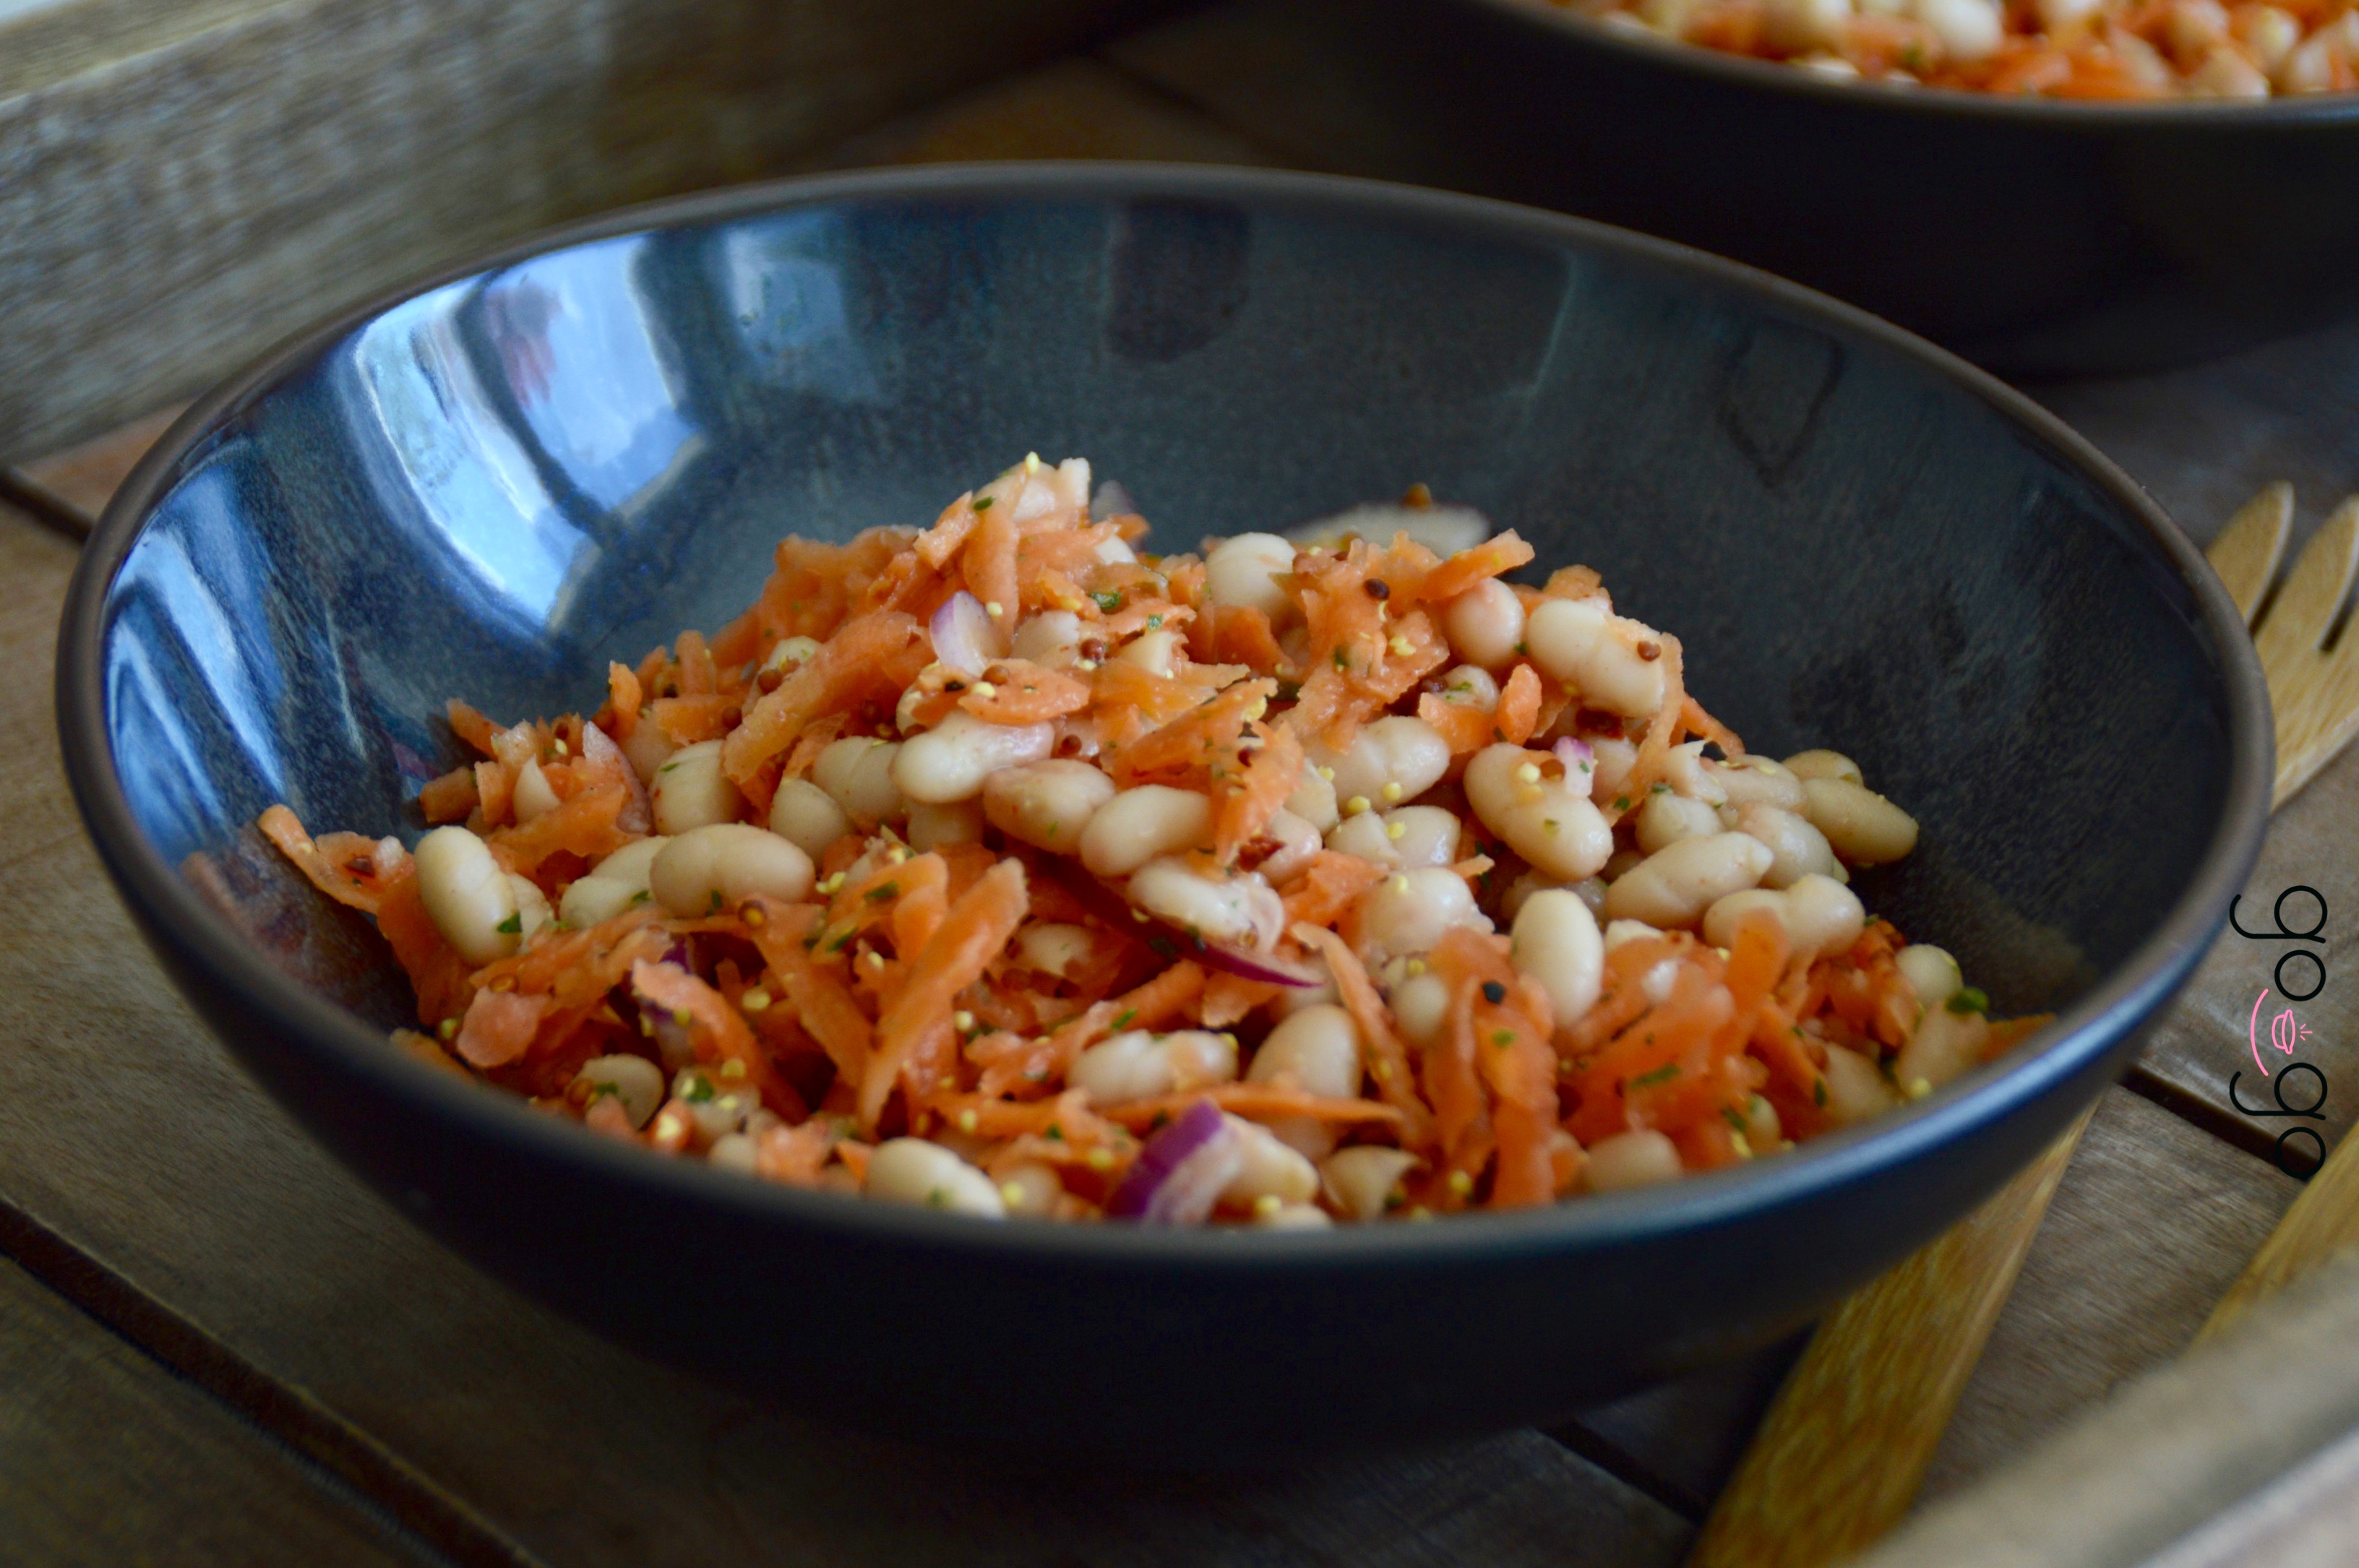 Recette salade de haricots rouges au vinaigre balsamique - Marie Claire